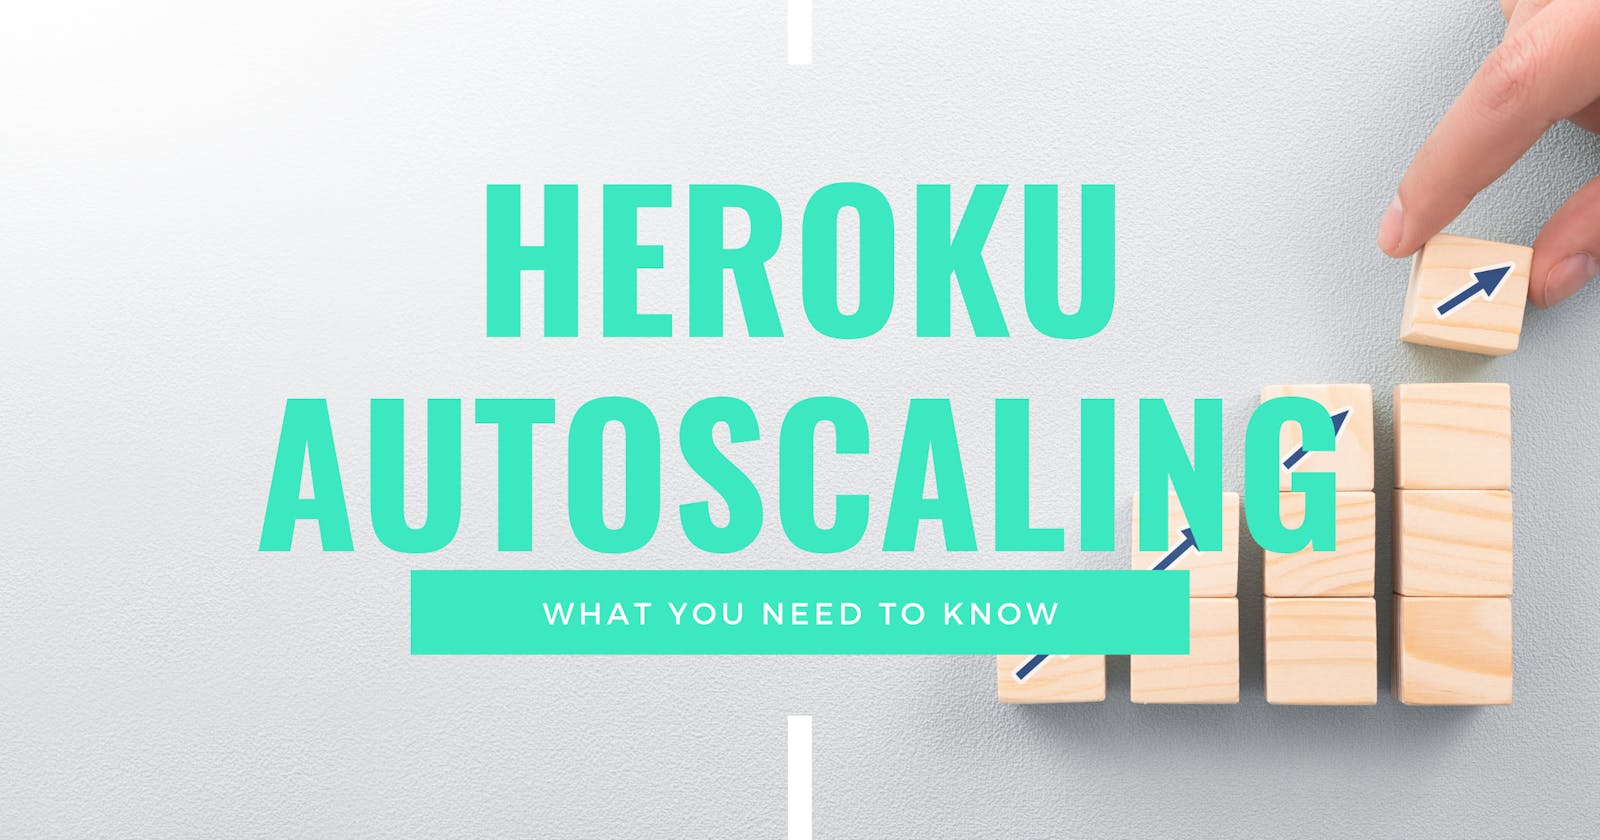 A Guide to Heroku Autoscaling